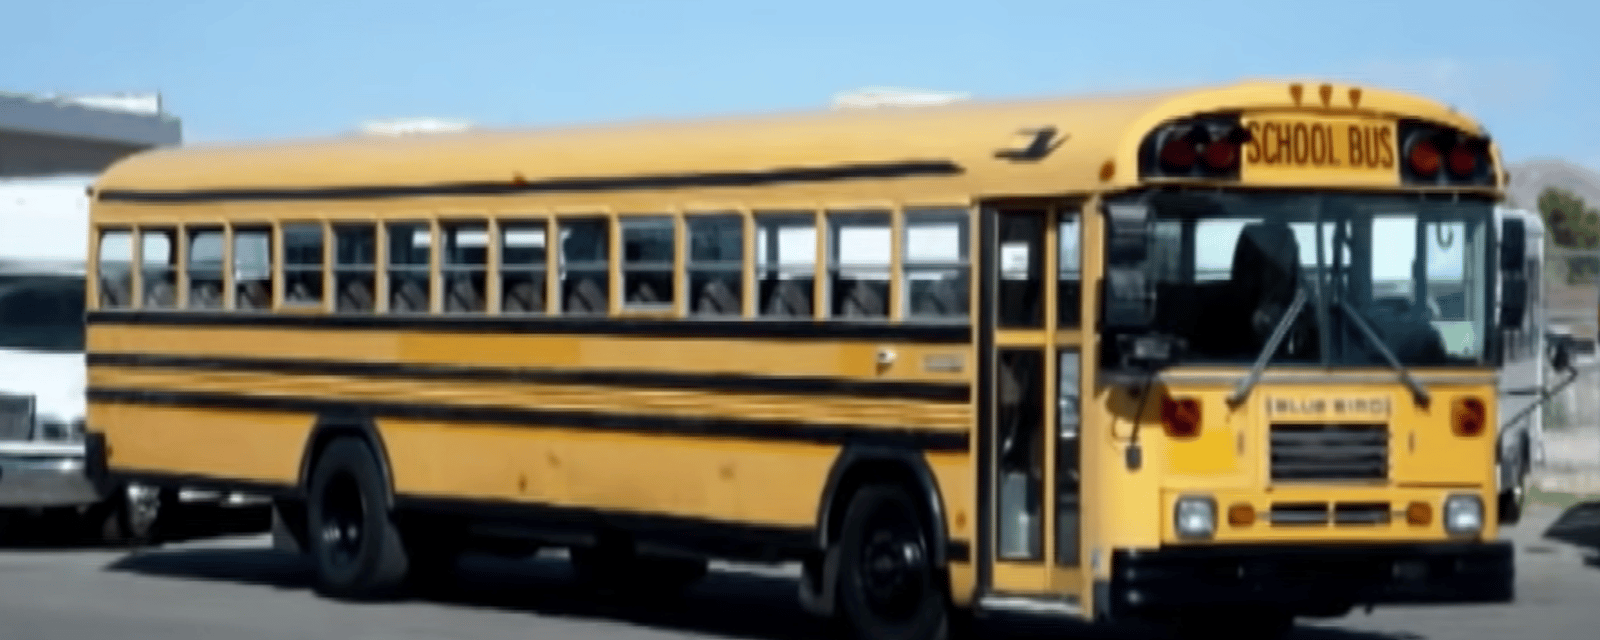 Il transforme un vieil autobus scolaire en luxueuse minimaison